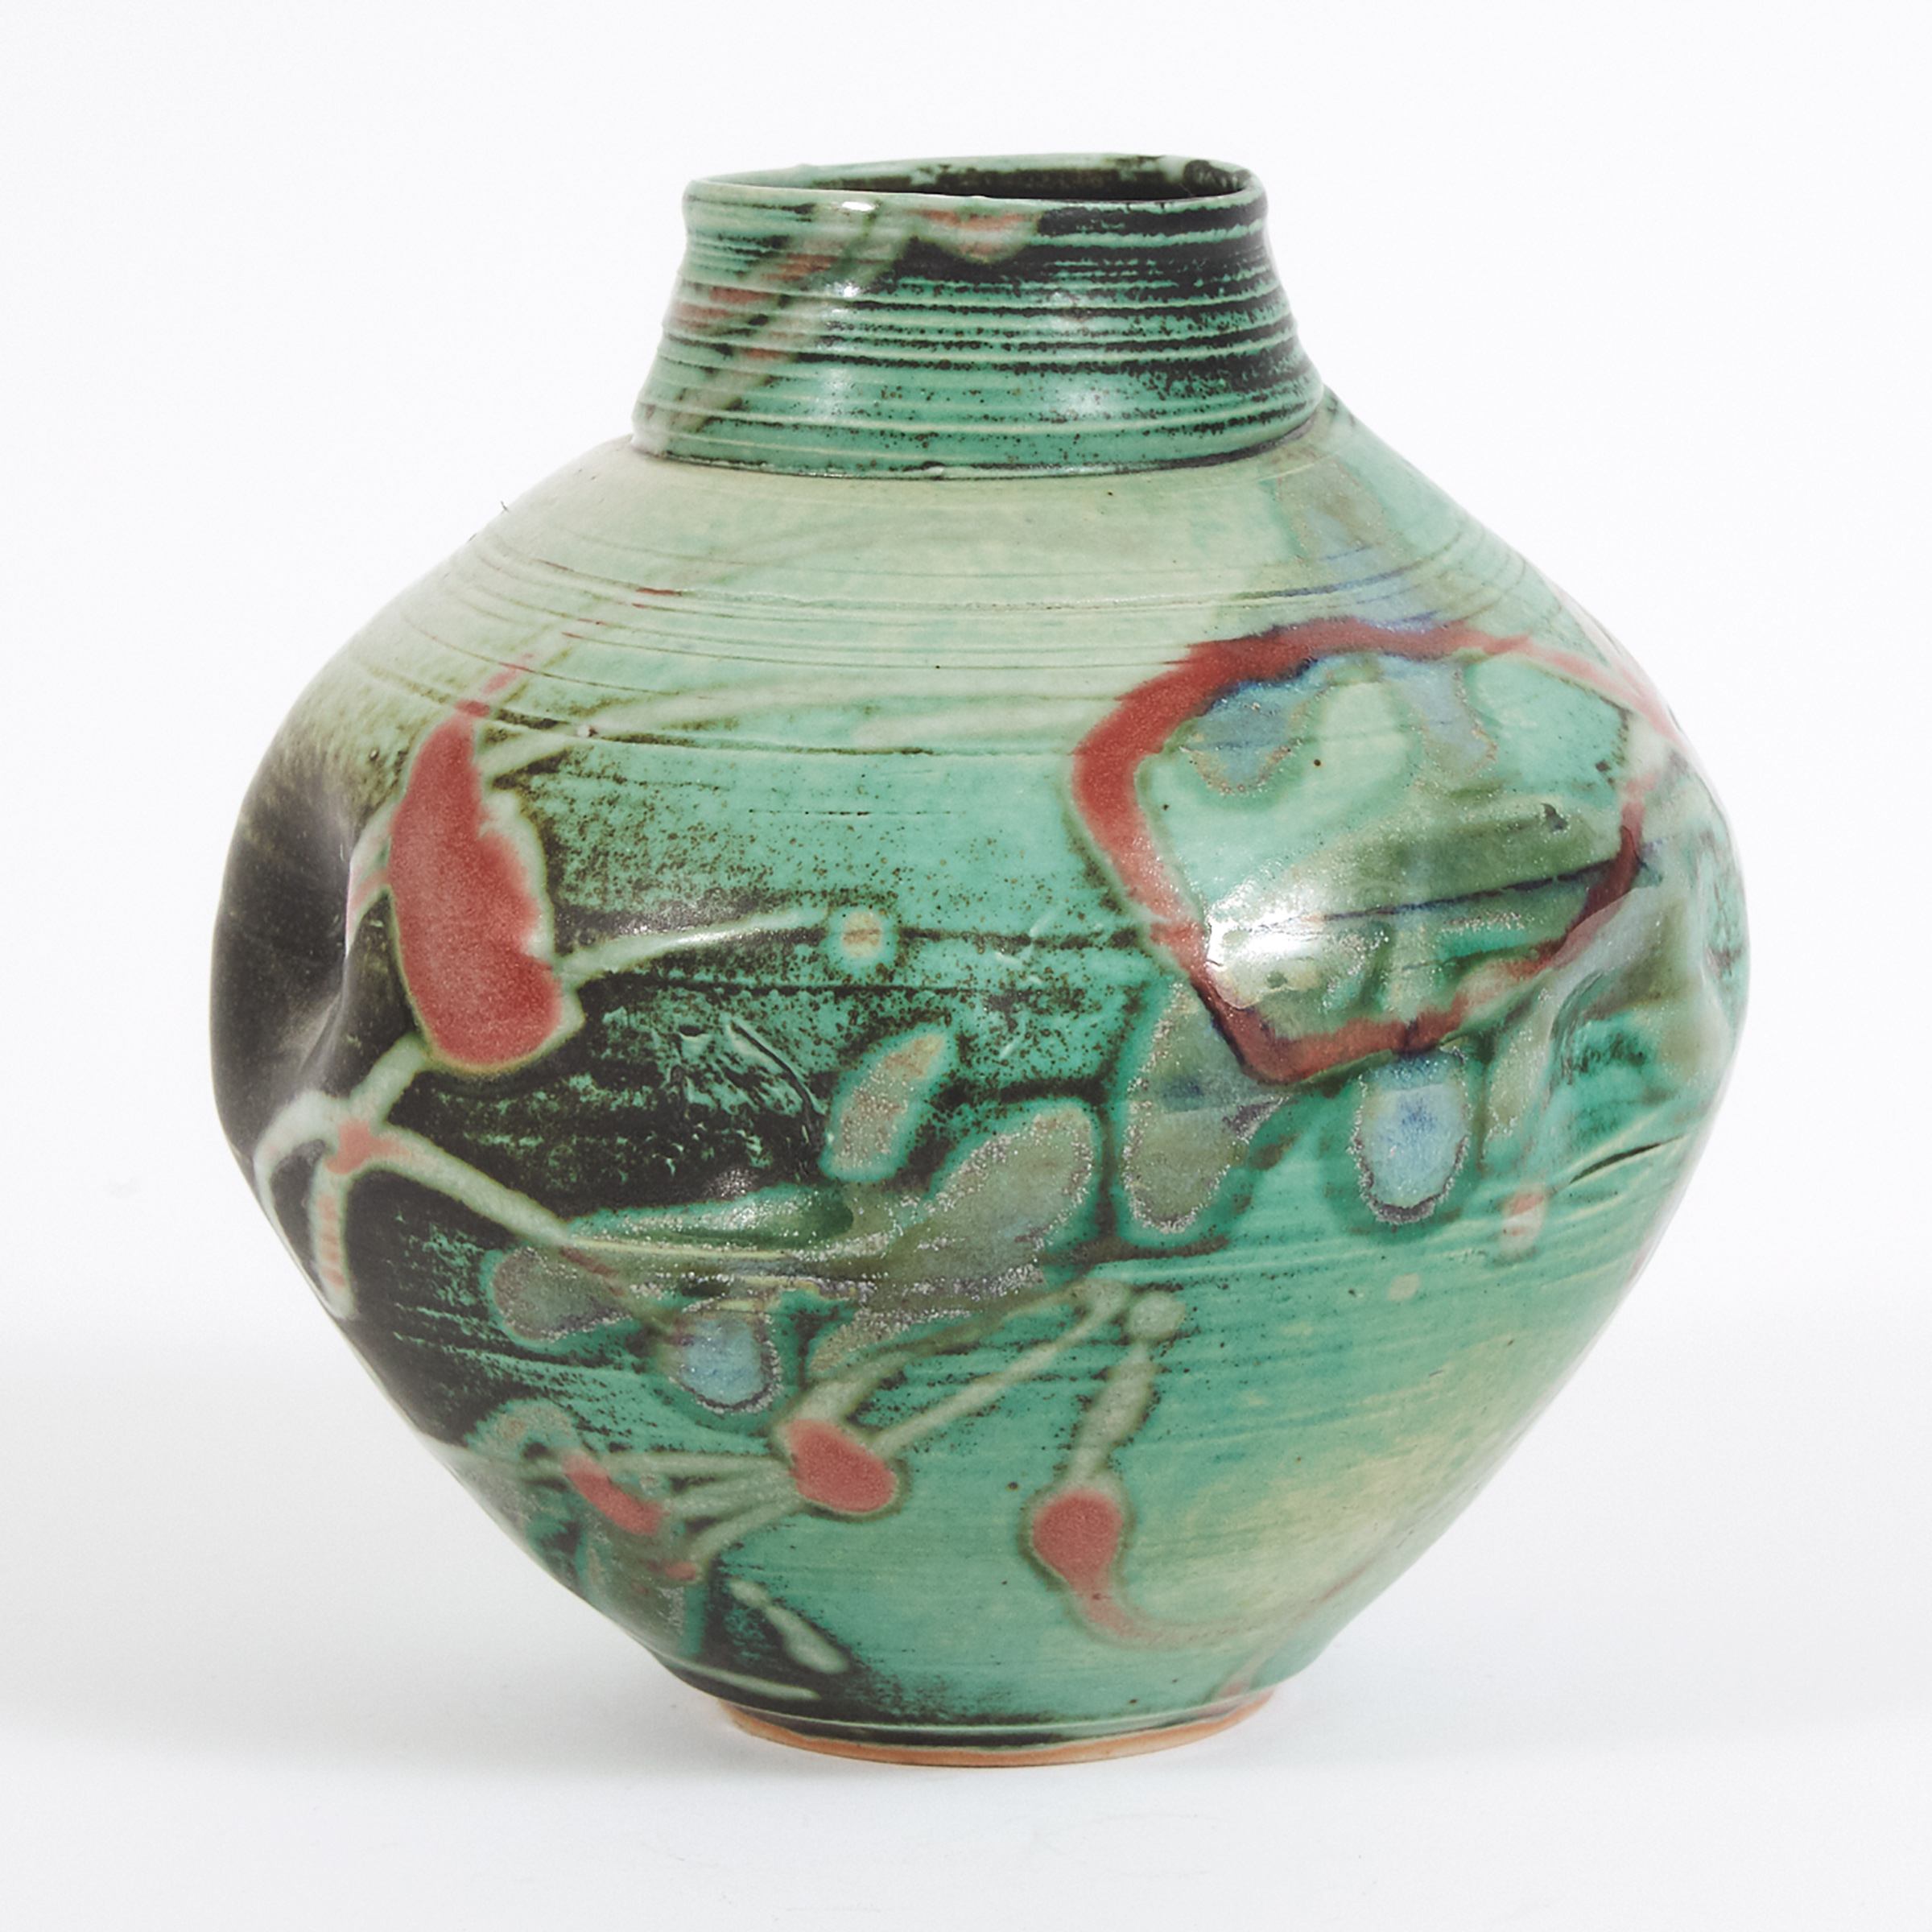 Kayo O'Young (Canadian, b.1950), 'Rainforest' Vase, 1993